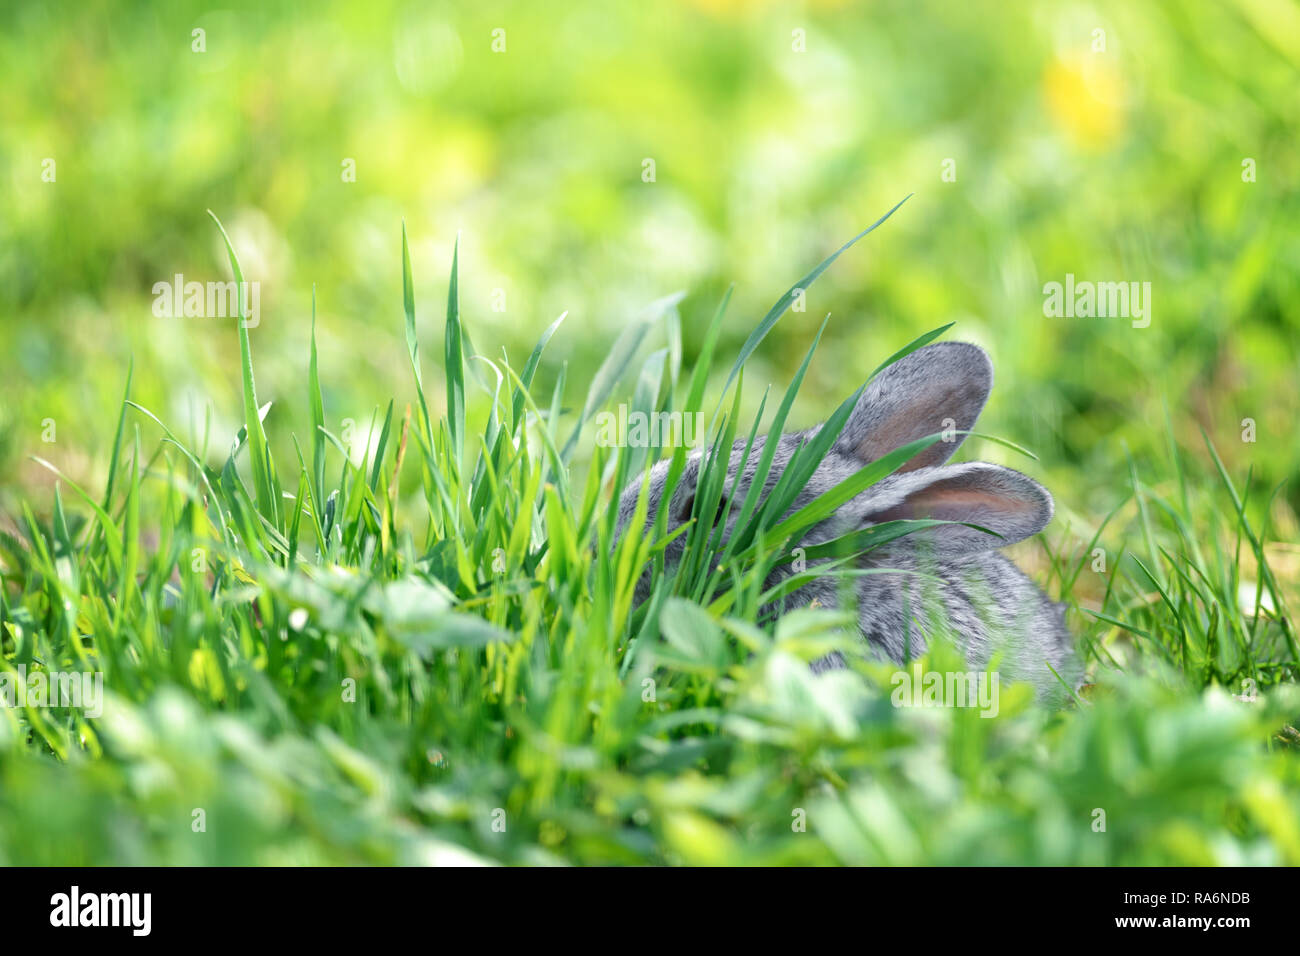 Piccolo coniglio grigio in erba verde closeup. Può essere utilizzato come sfondo di Pasqua. Fotografia degli animali Foto Stock